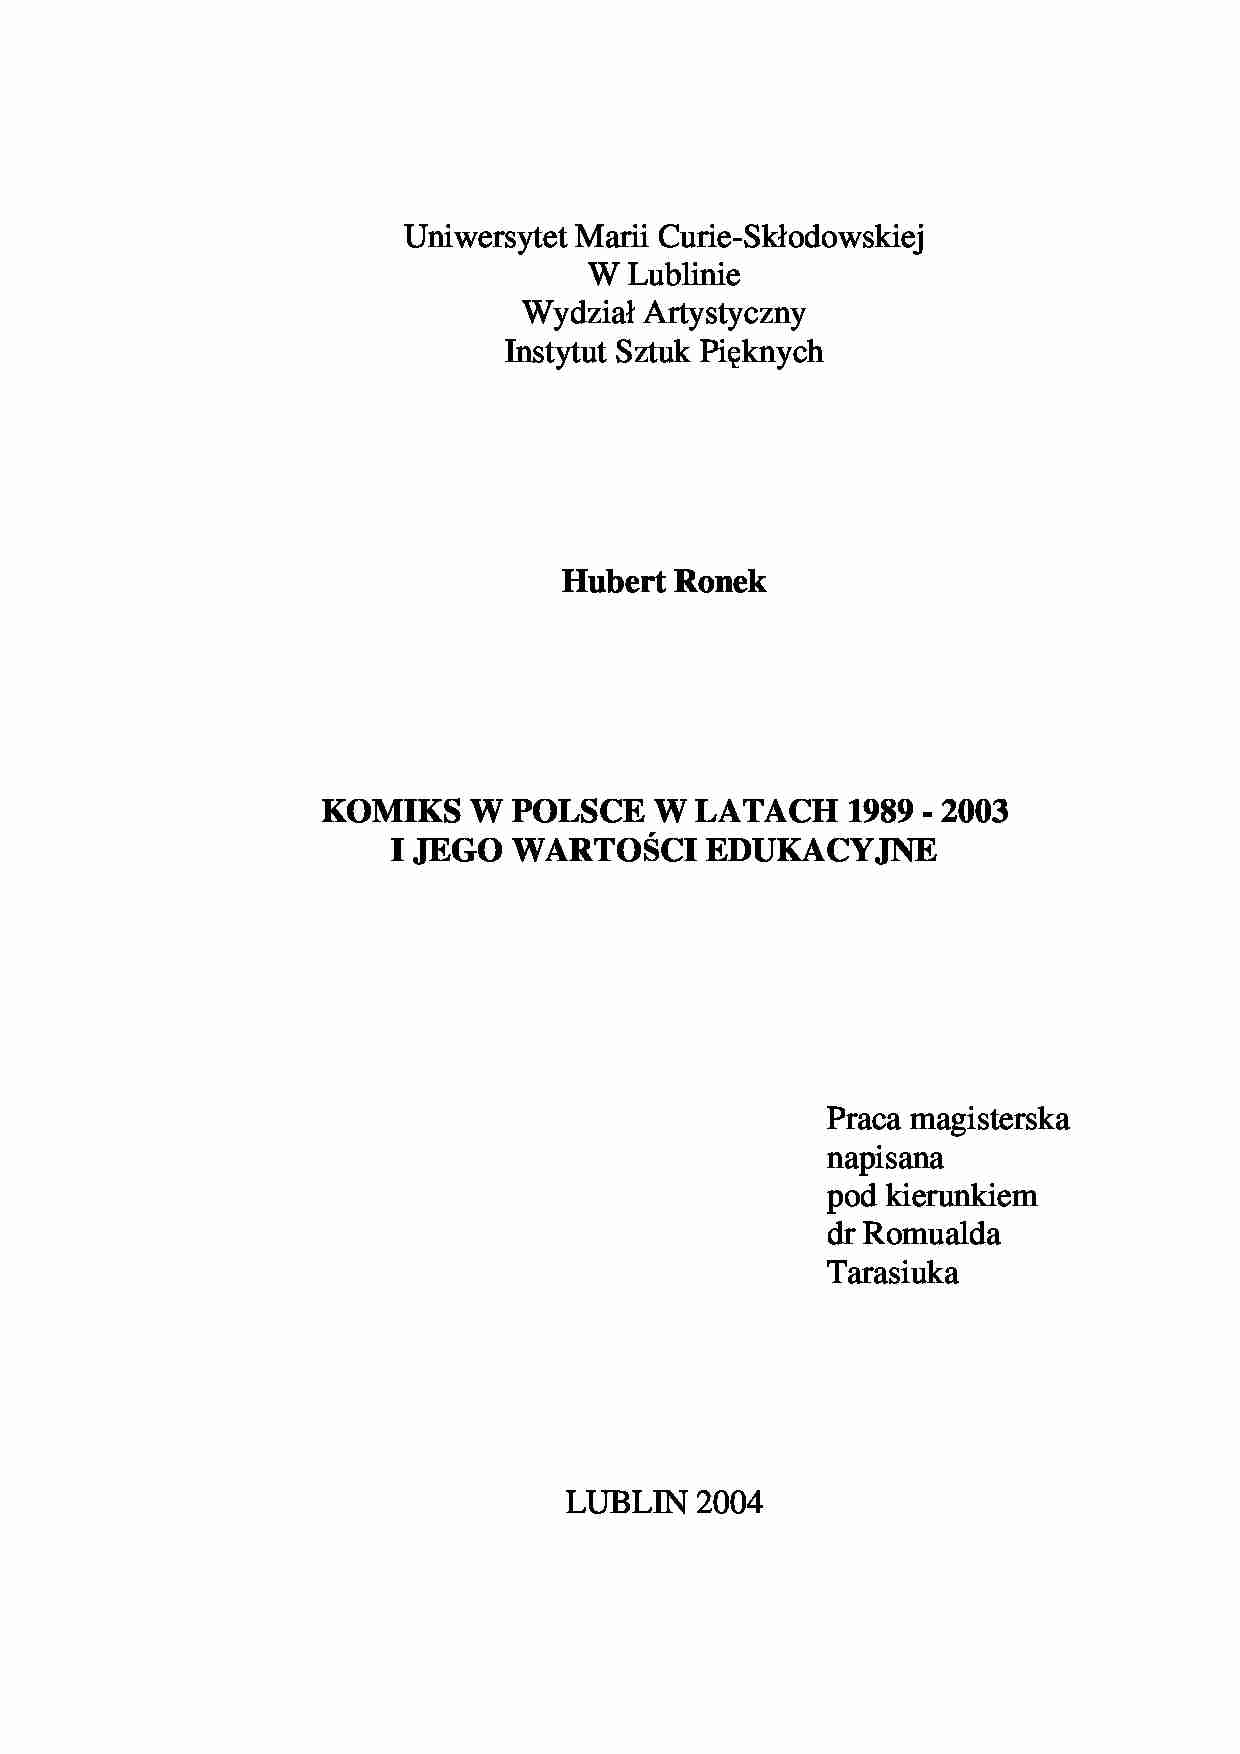 Ronek Hubert - Komiks w Polsce w latach 1989 - 2003 i jego wartosci edukacyjne - opracowanie - strona 1